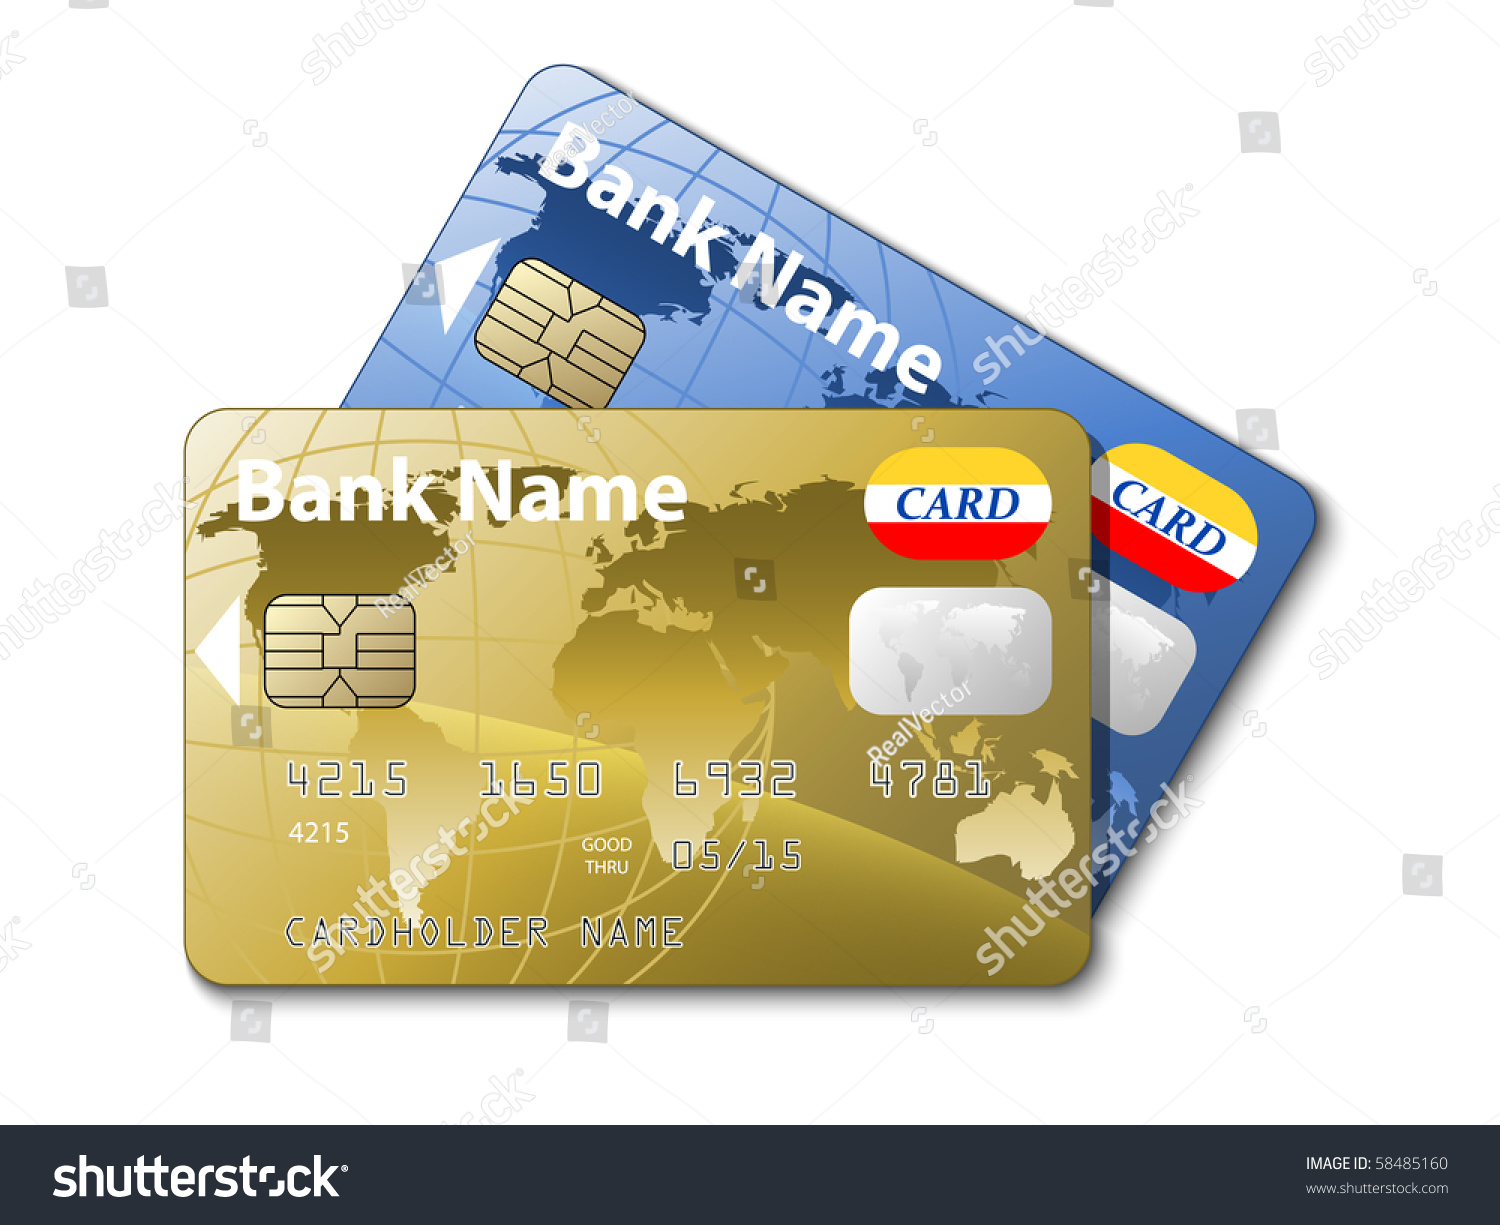 Покажи карты с деньгами. Банковская карта. Изображения для банковских карт. Рисунки банковских карт. Банковские карточки с рисунками.